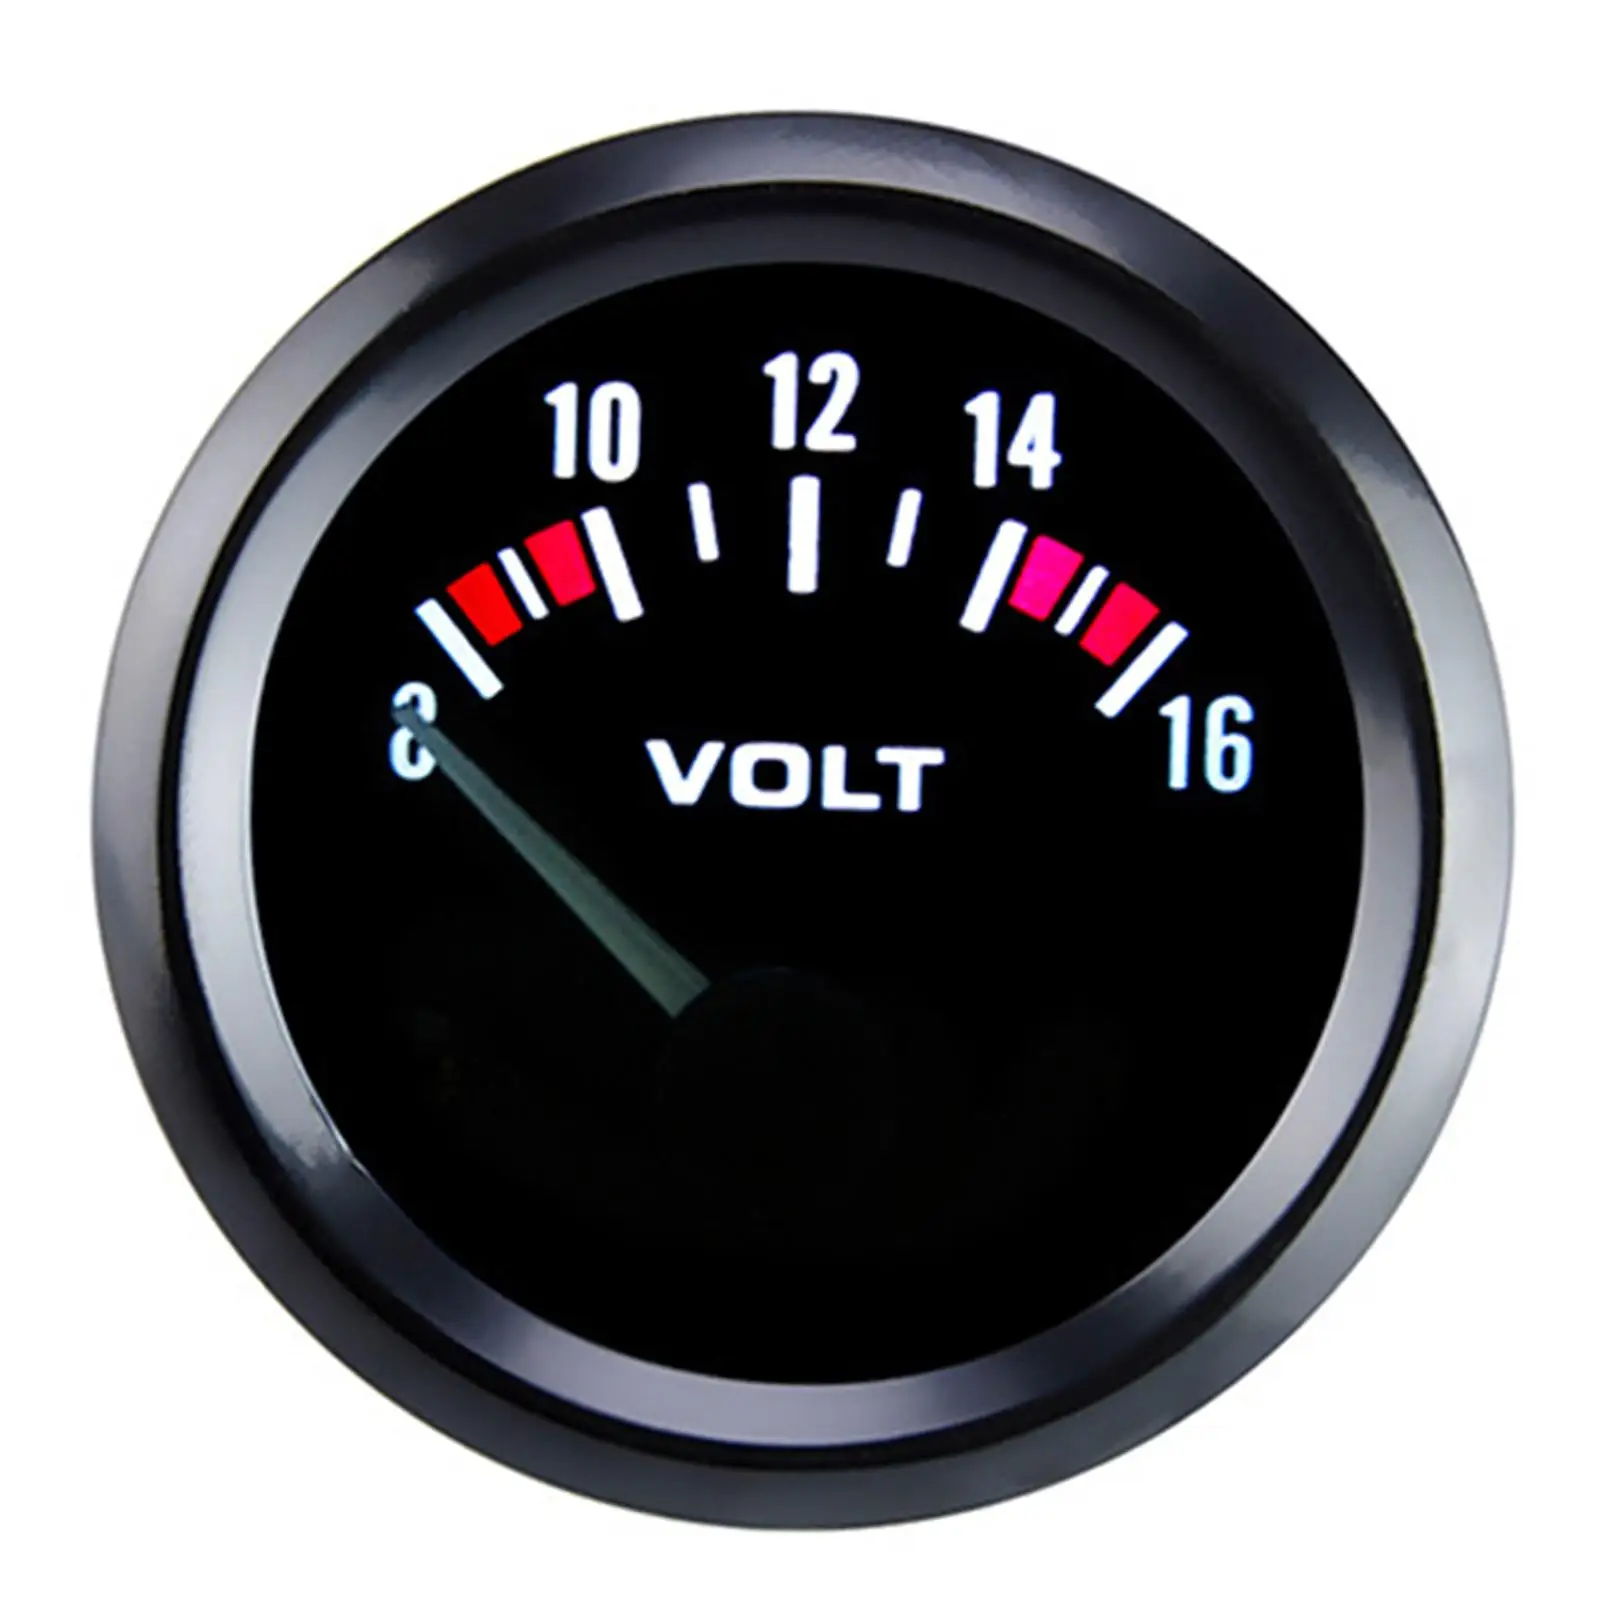 Car Voltmeter Auto Parts Volt Meter Gauges for Bicycle Auto Vehicle